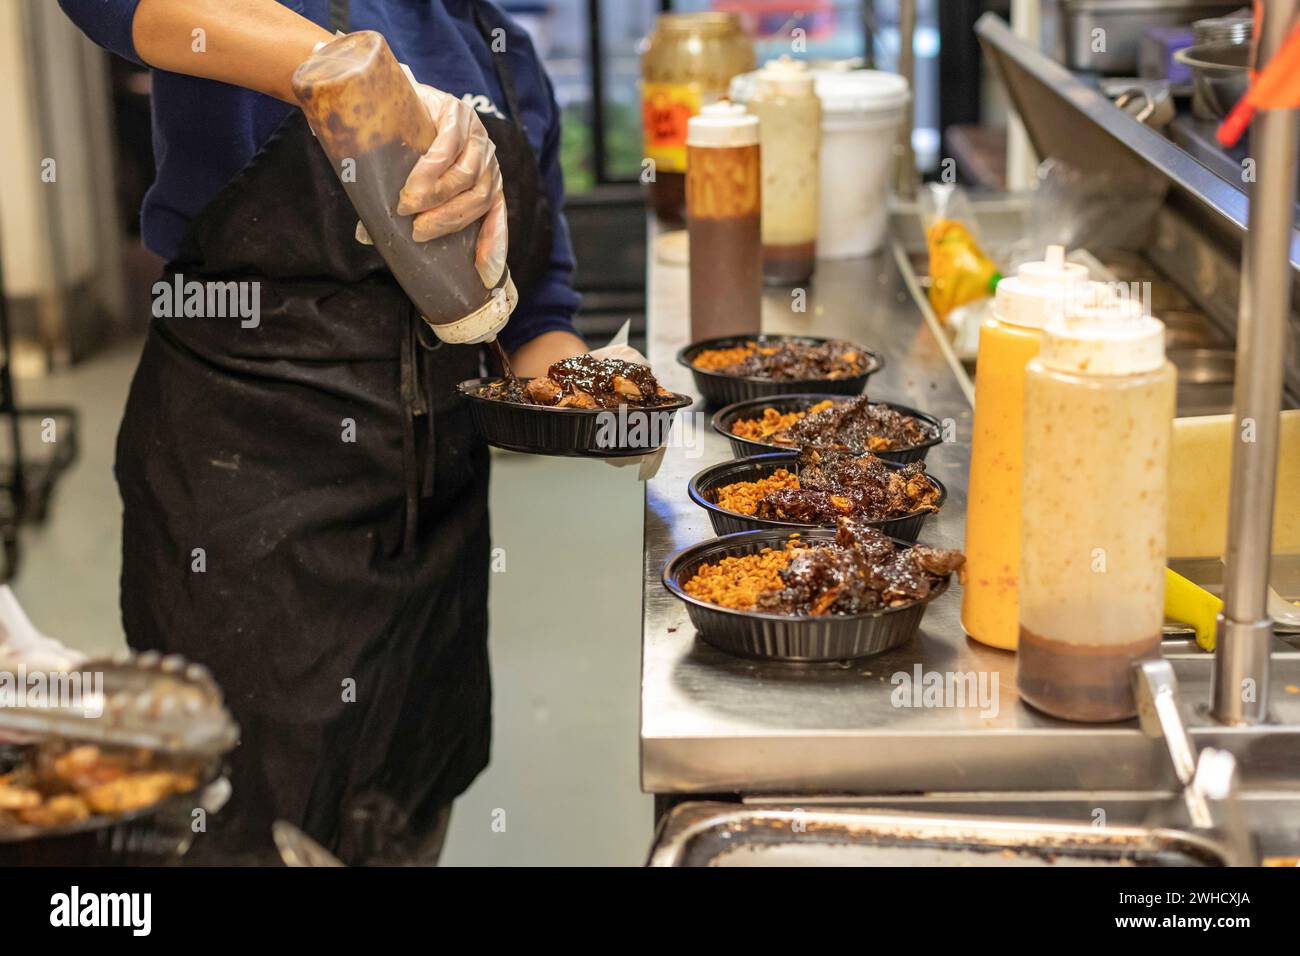 Detroit, Michigan - Los trabajadores preparan comida en el restaurante Yum Village, que sirve comidas afrocaribeñas. Foto de stock